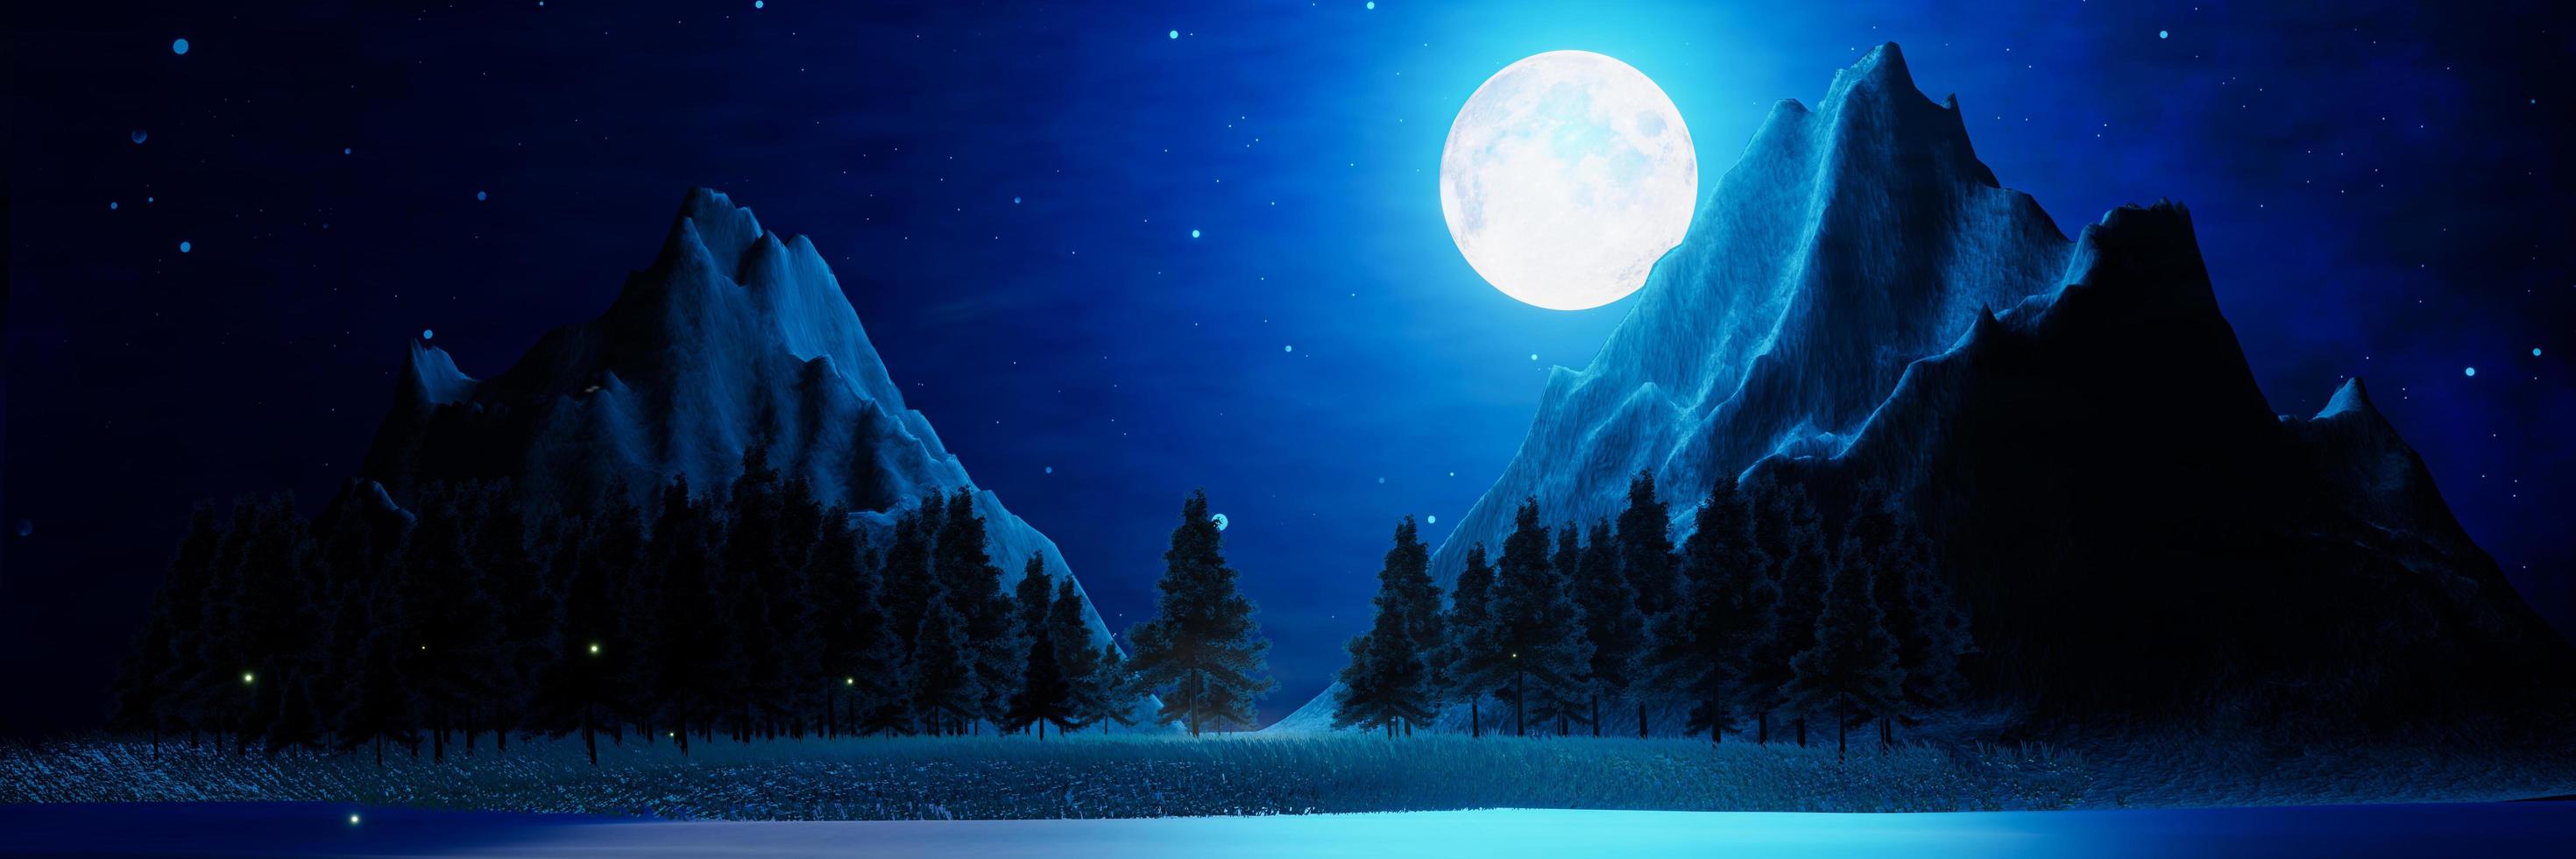 de vastes prairies avec des pins et des montagnes alternent en arrière-plan. les étoiles brillantes de la nuit de pleine lune remplissent le ciel. paysage de montagne nocturne avec des lucioles volant au-dessus du sol. rendu 3d photo